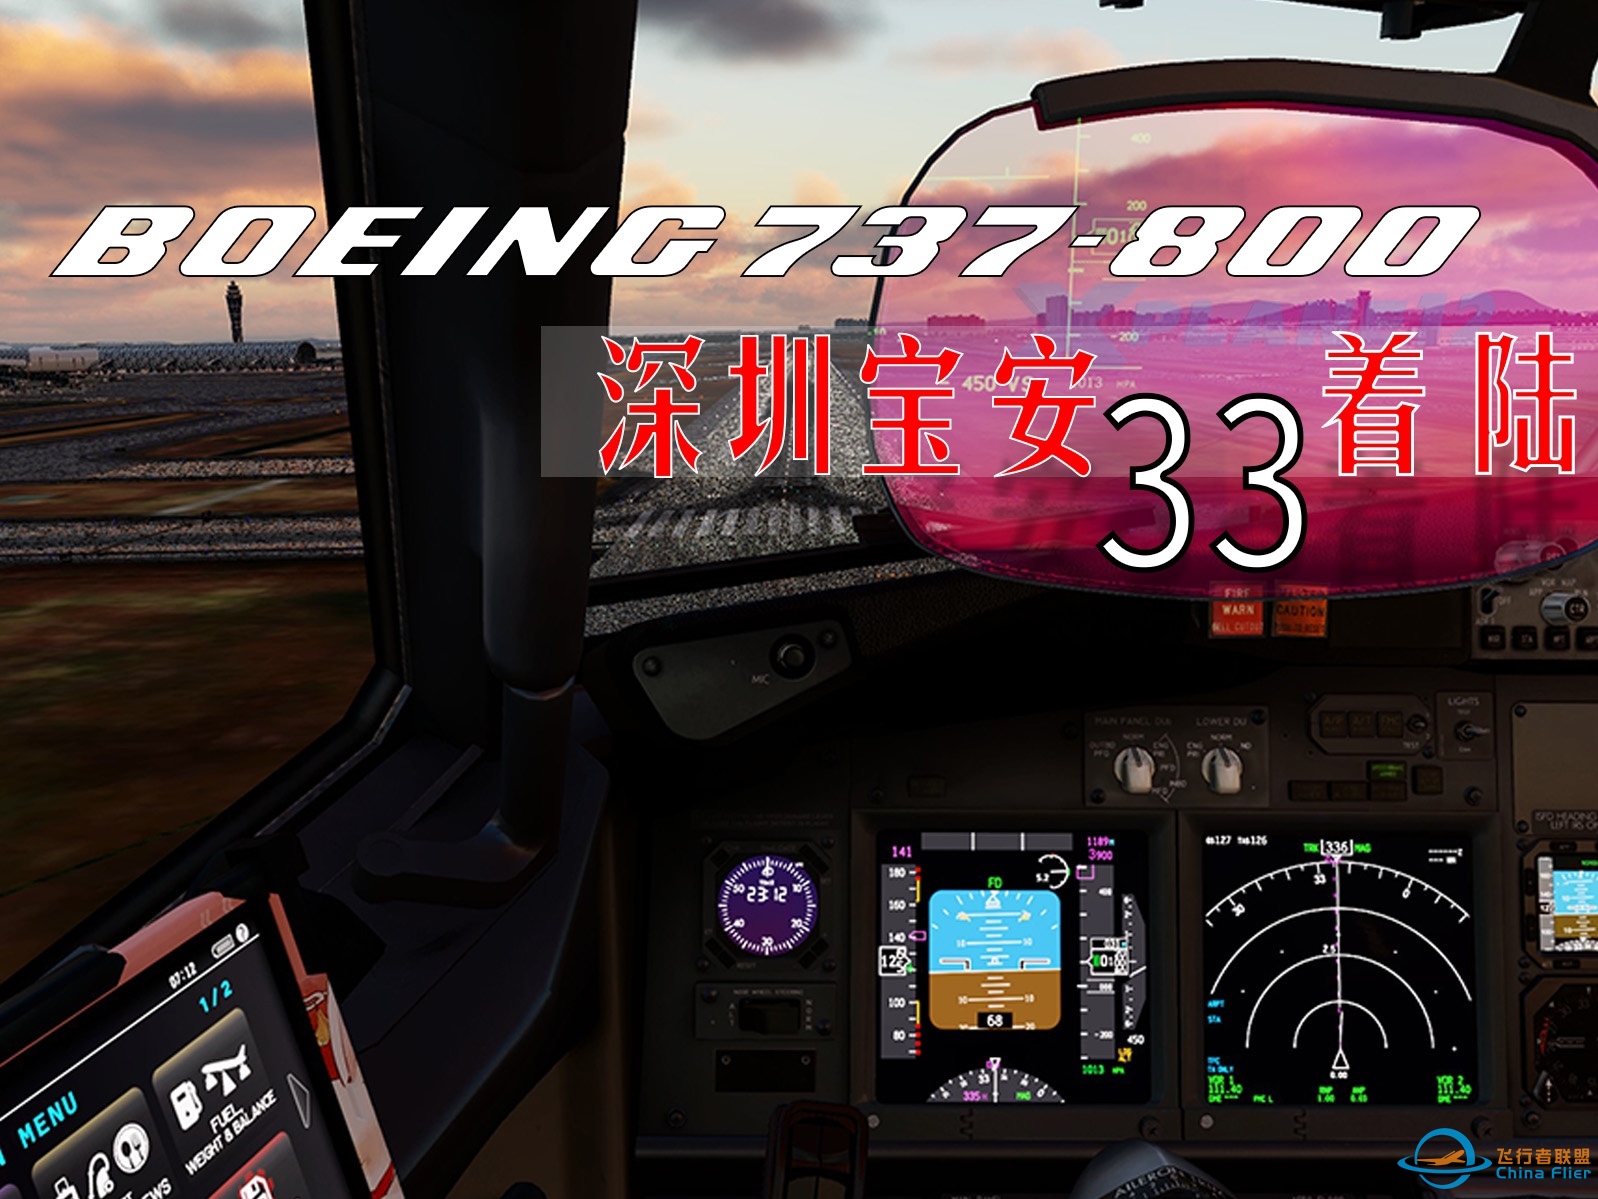 [X-Plane 12 飞行模拟]Zibo 737-800 深圳宝安国际机场33跑道第一视角着陆。-3905 